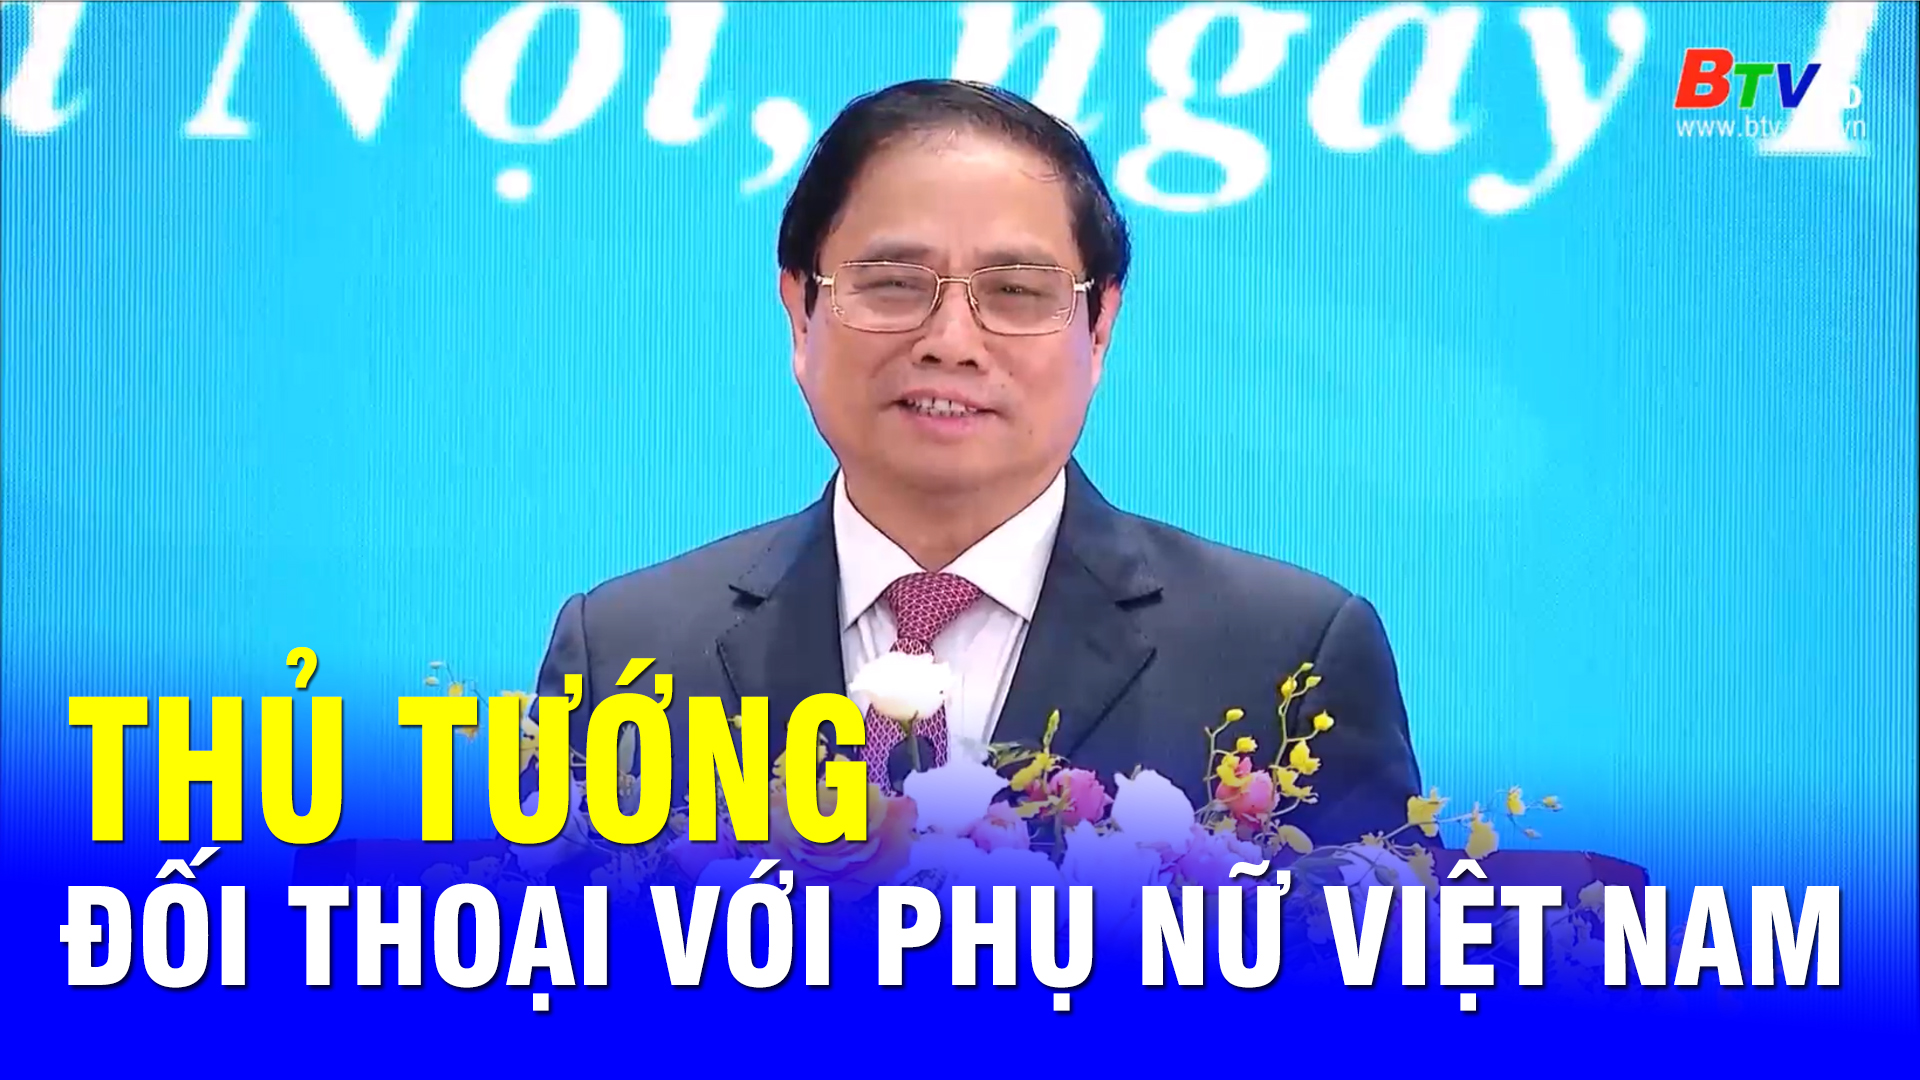 Thủ tướng đối thoại với phụ nữ Việt Nam